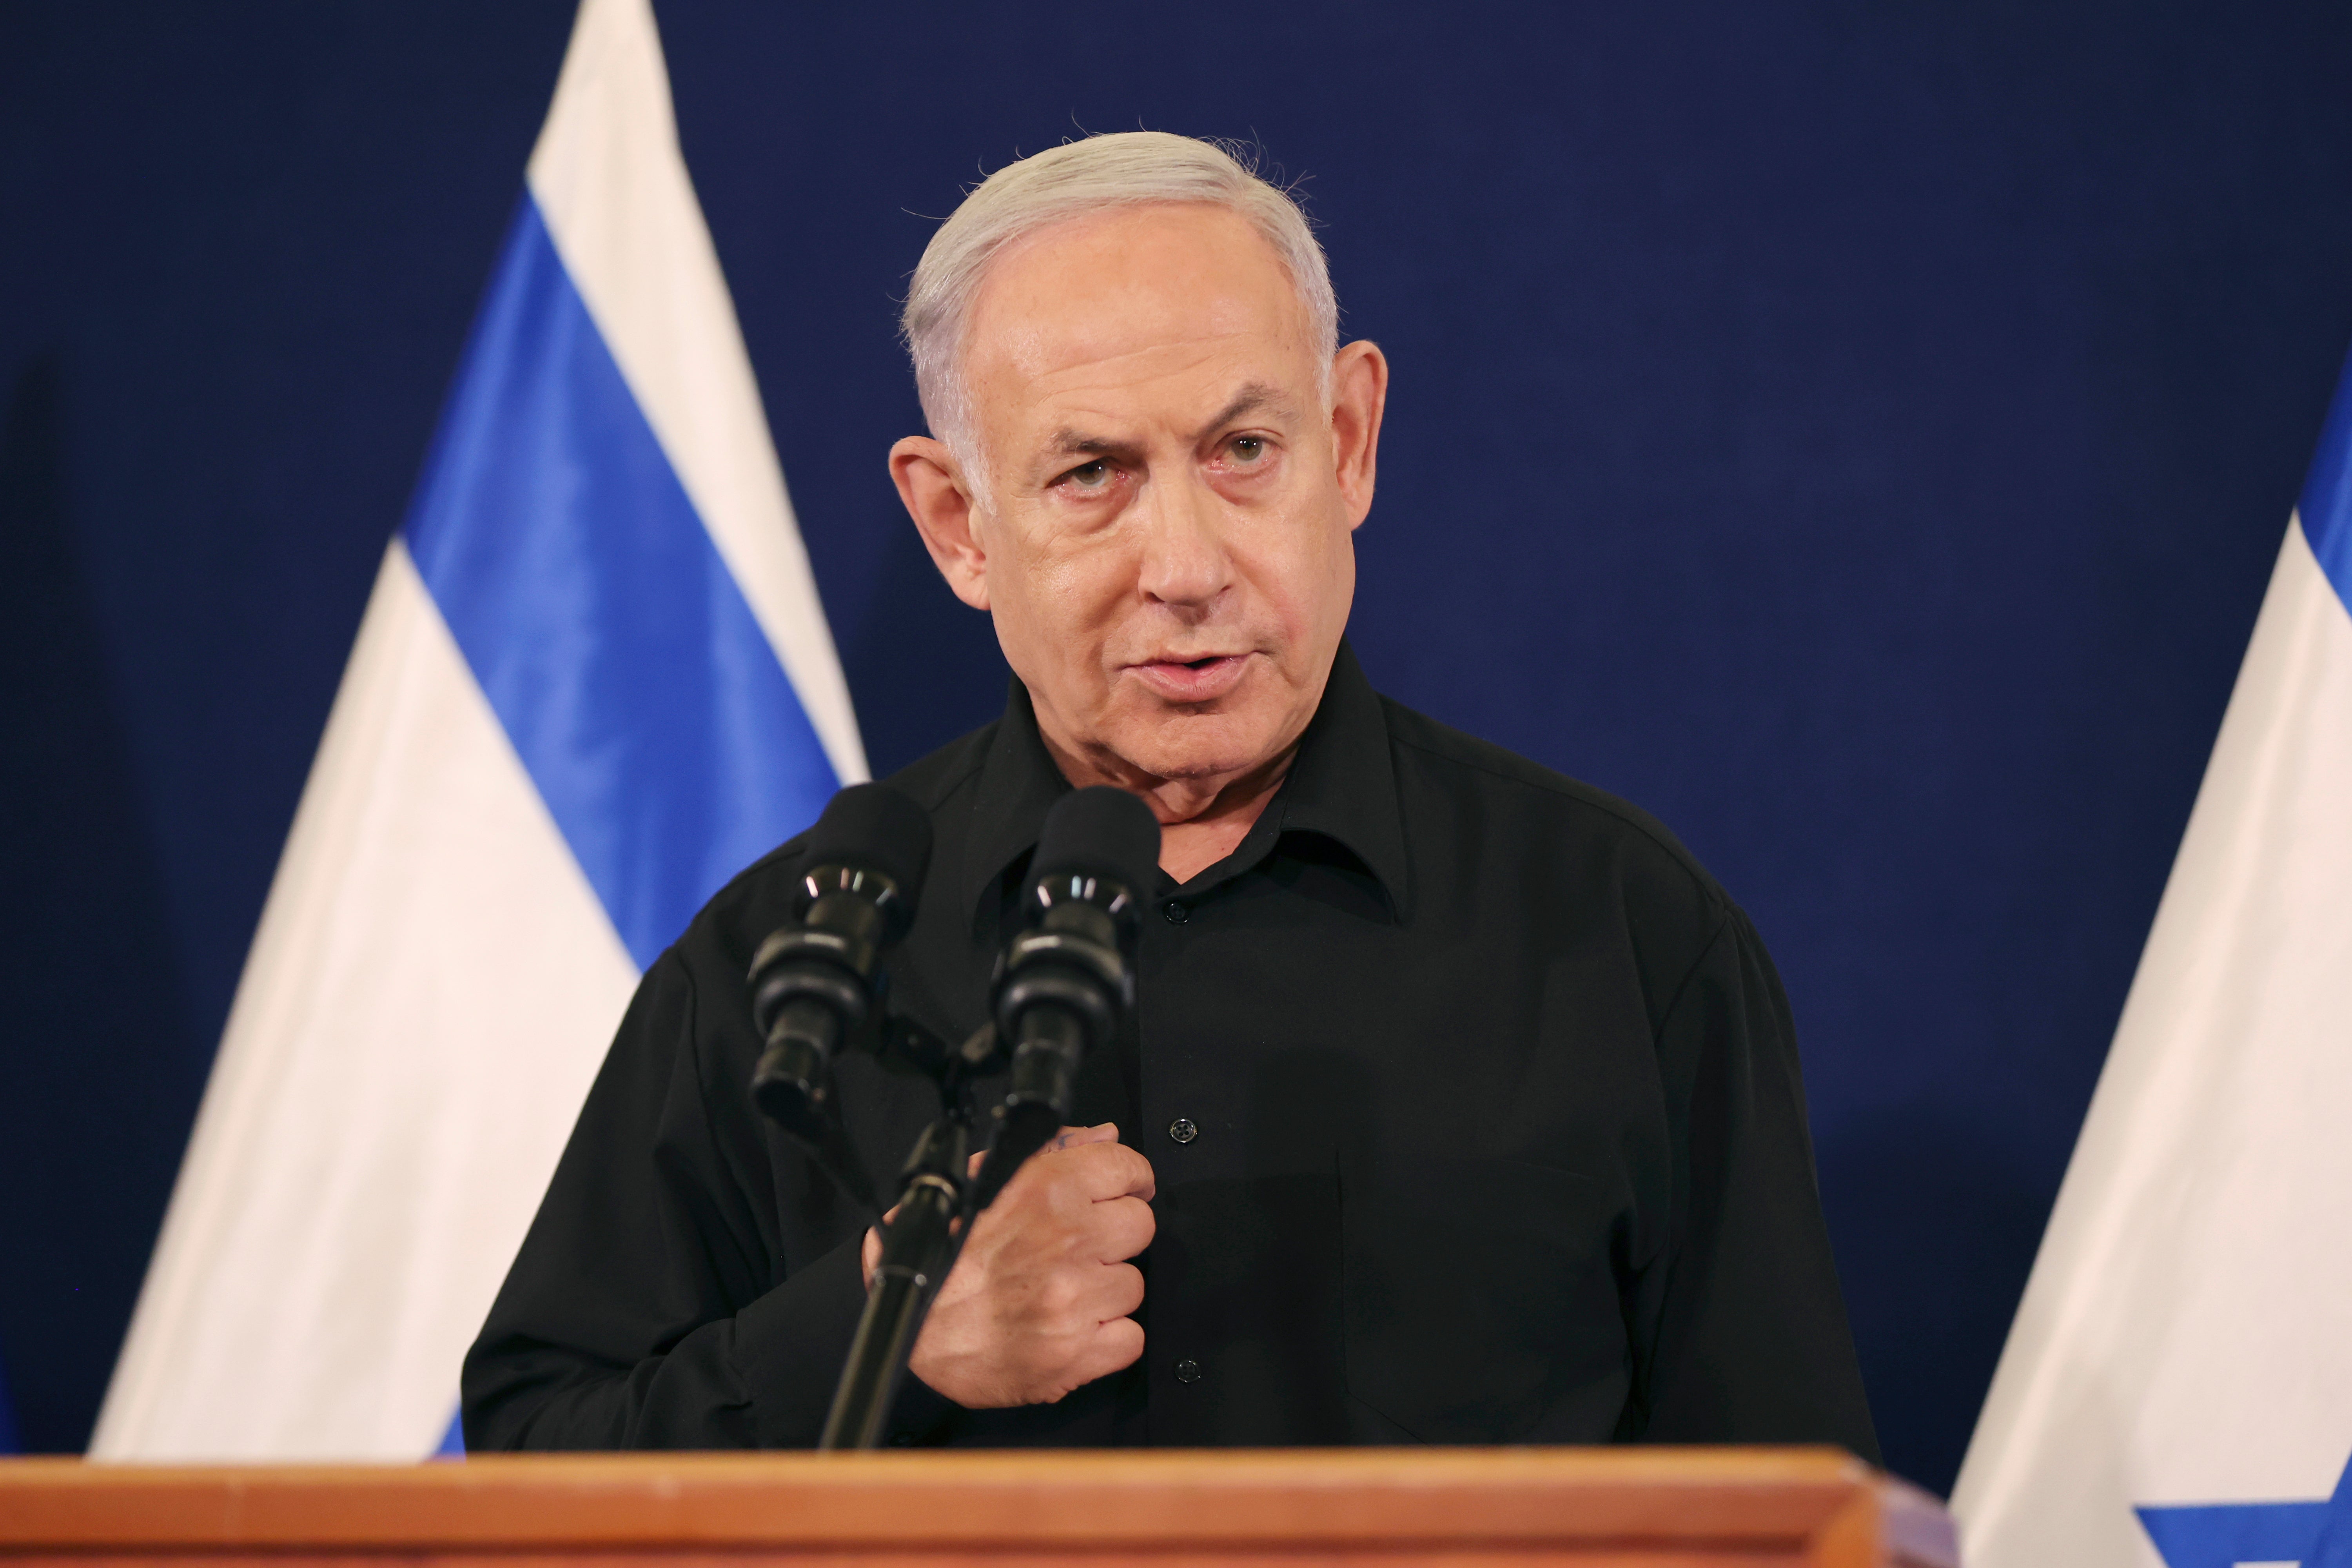 Israeli prime minister Benjamin Netanyahu has met family members of the hostages being held by Hamas